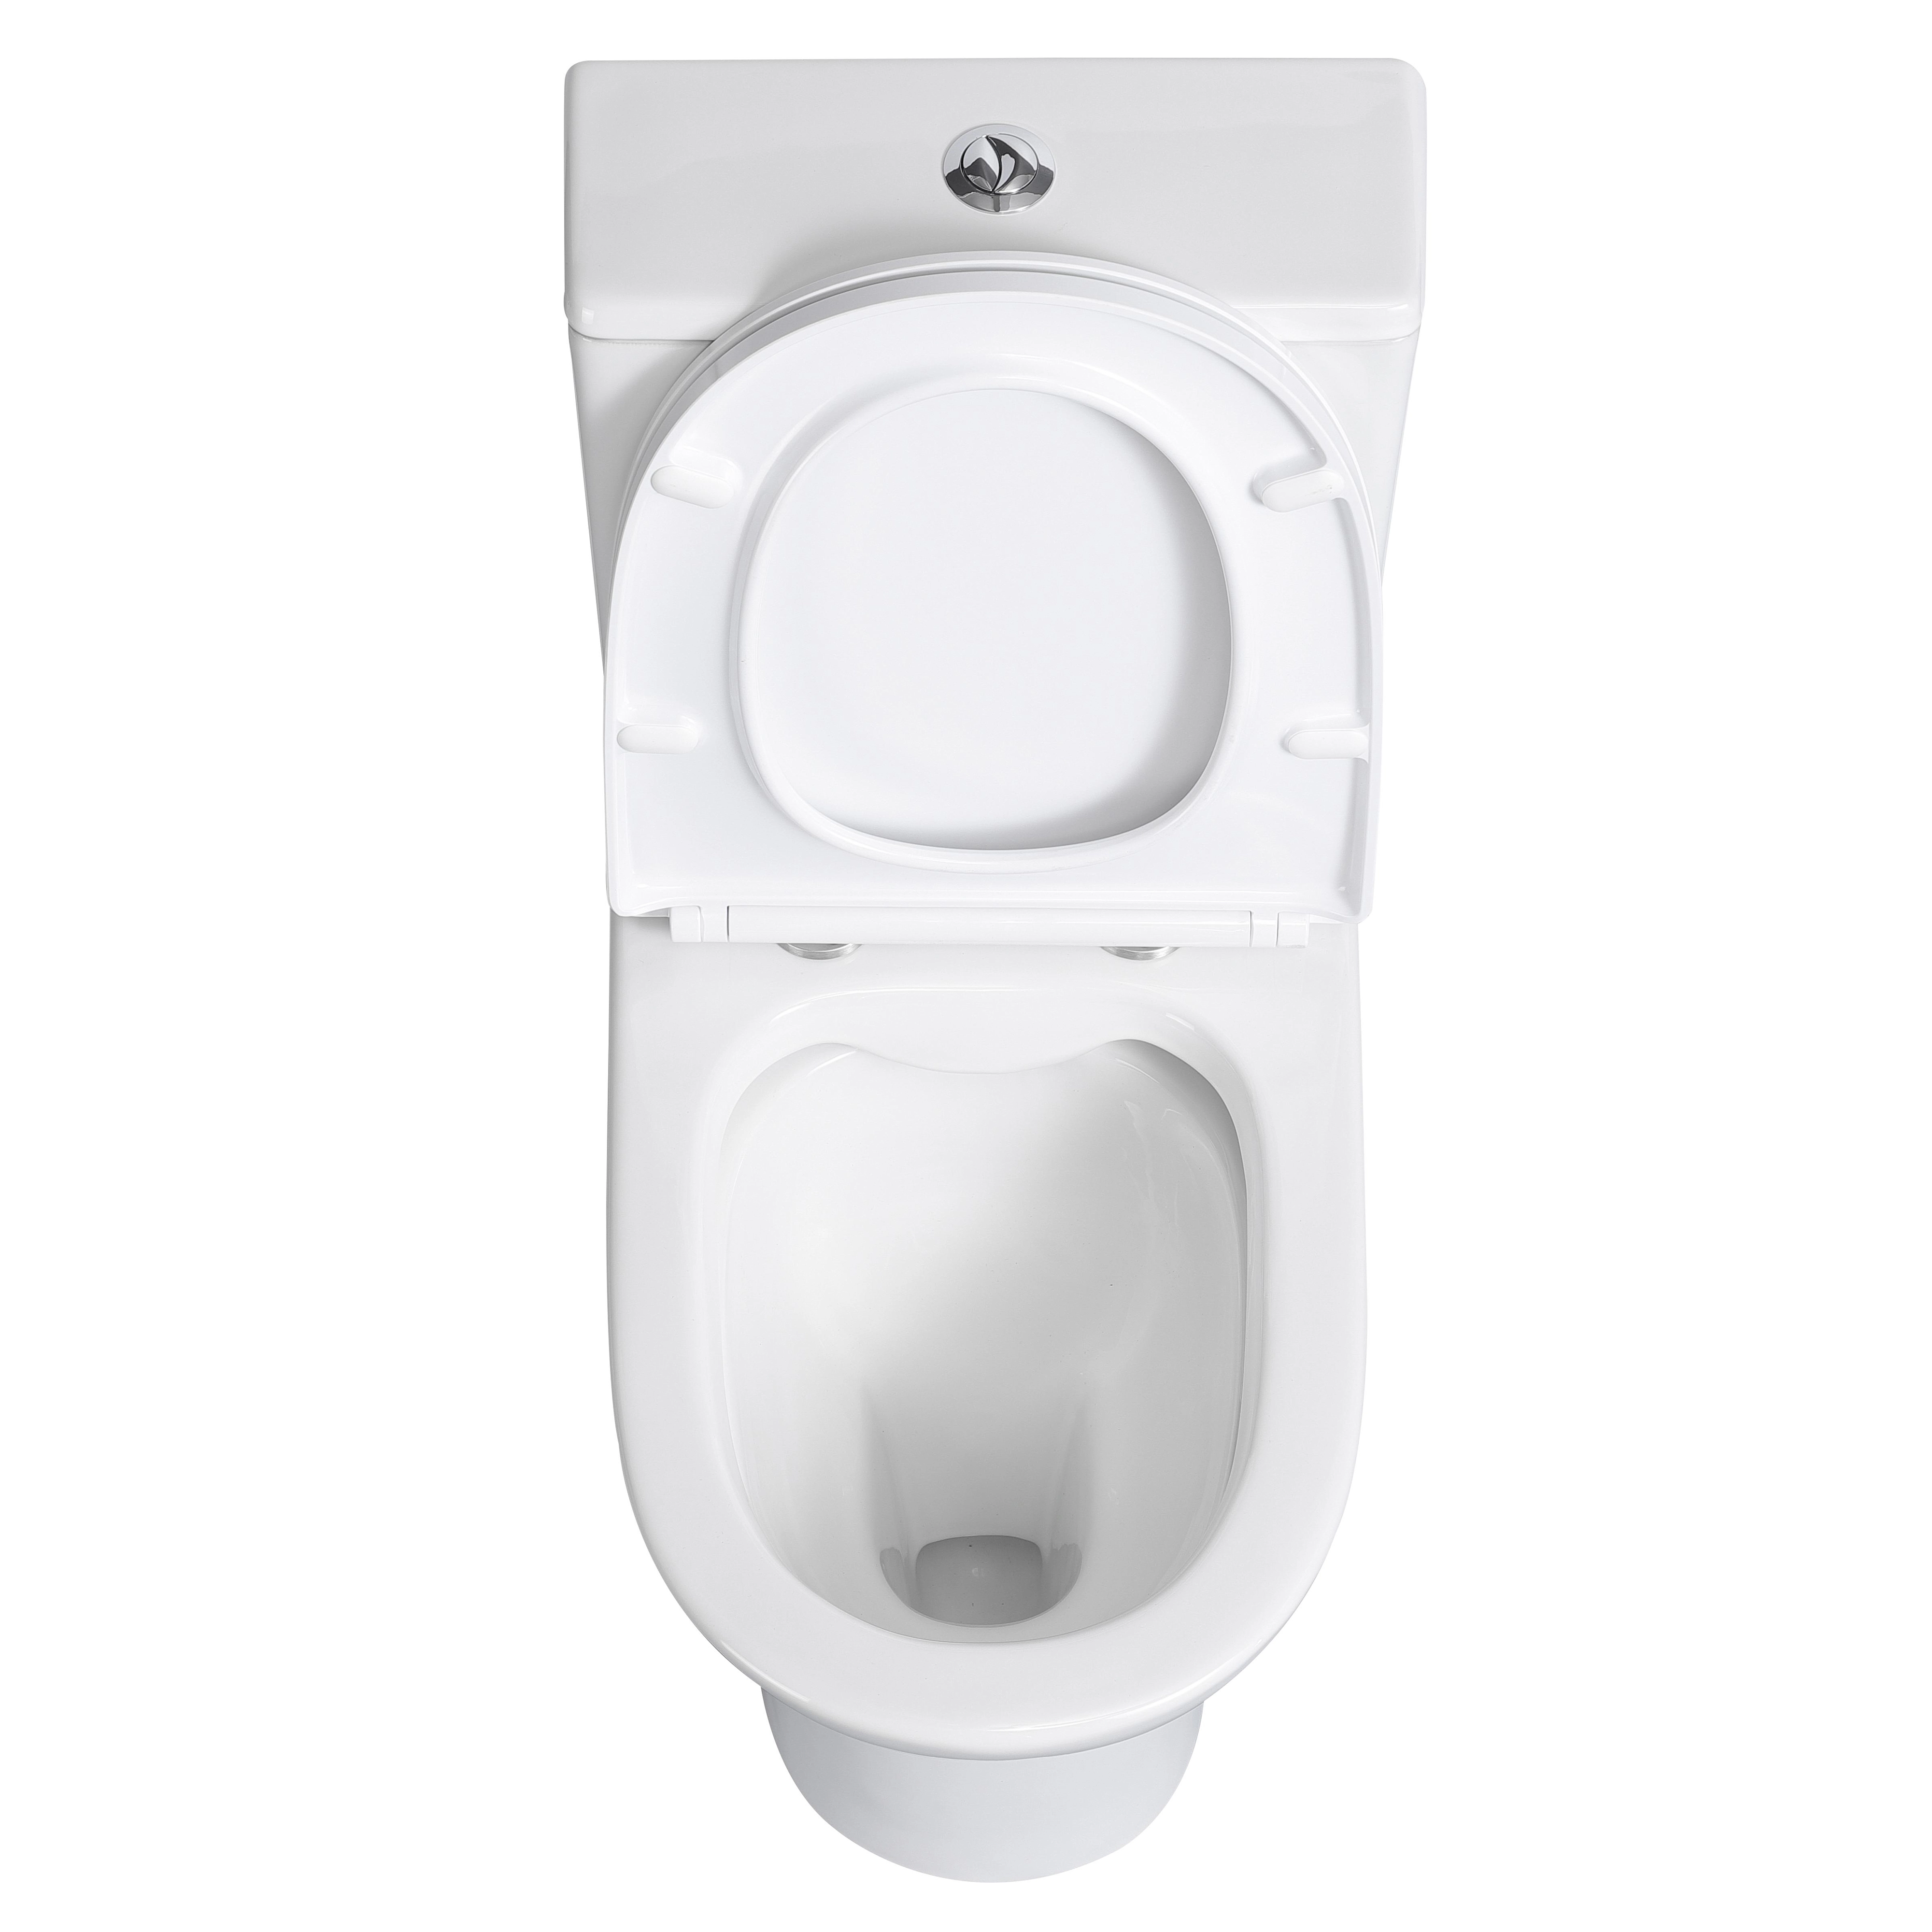 und OBI spülrandlos Stand-WC-Set Spülkasten Verosan+ bei Paros inkl. WC-Sitz Weiß kaufen